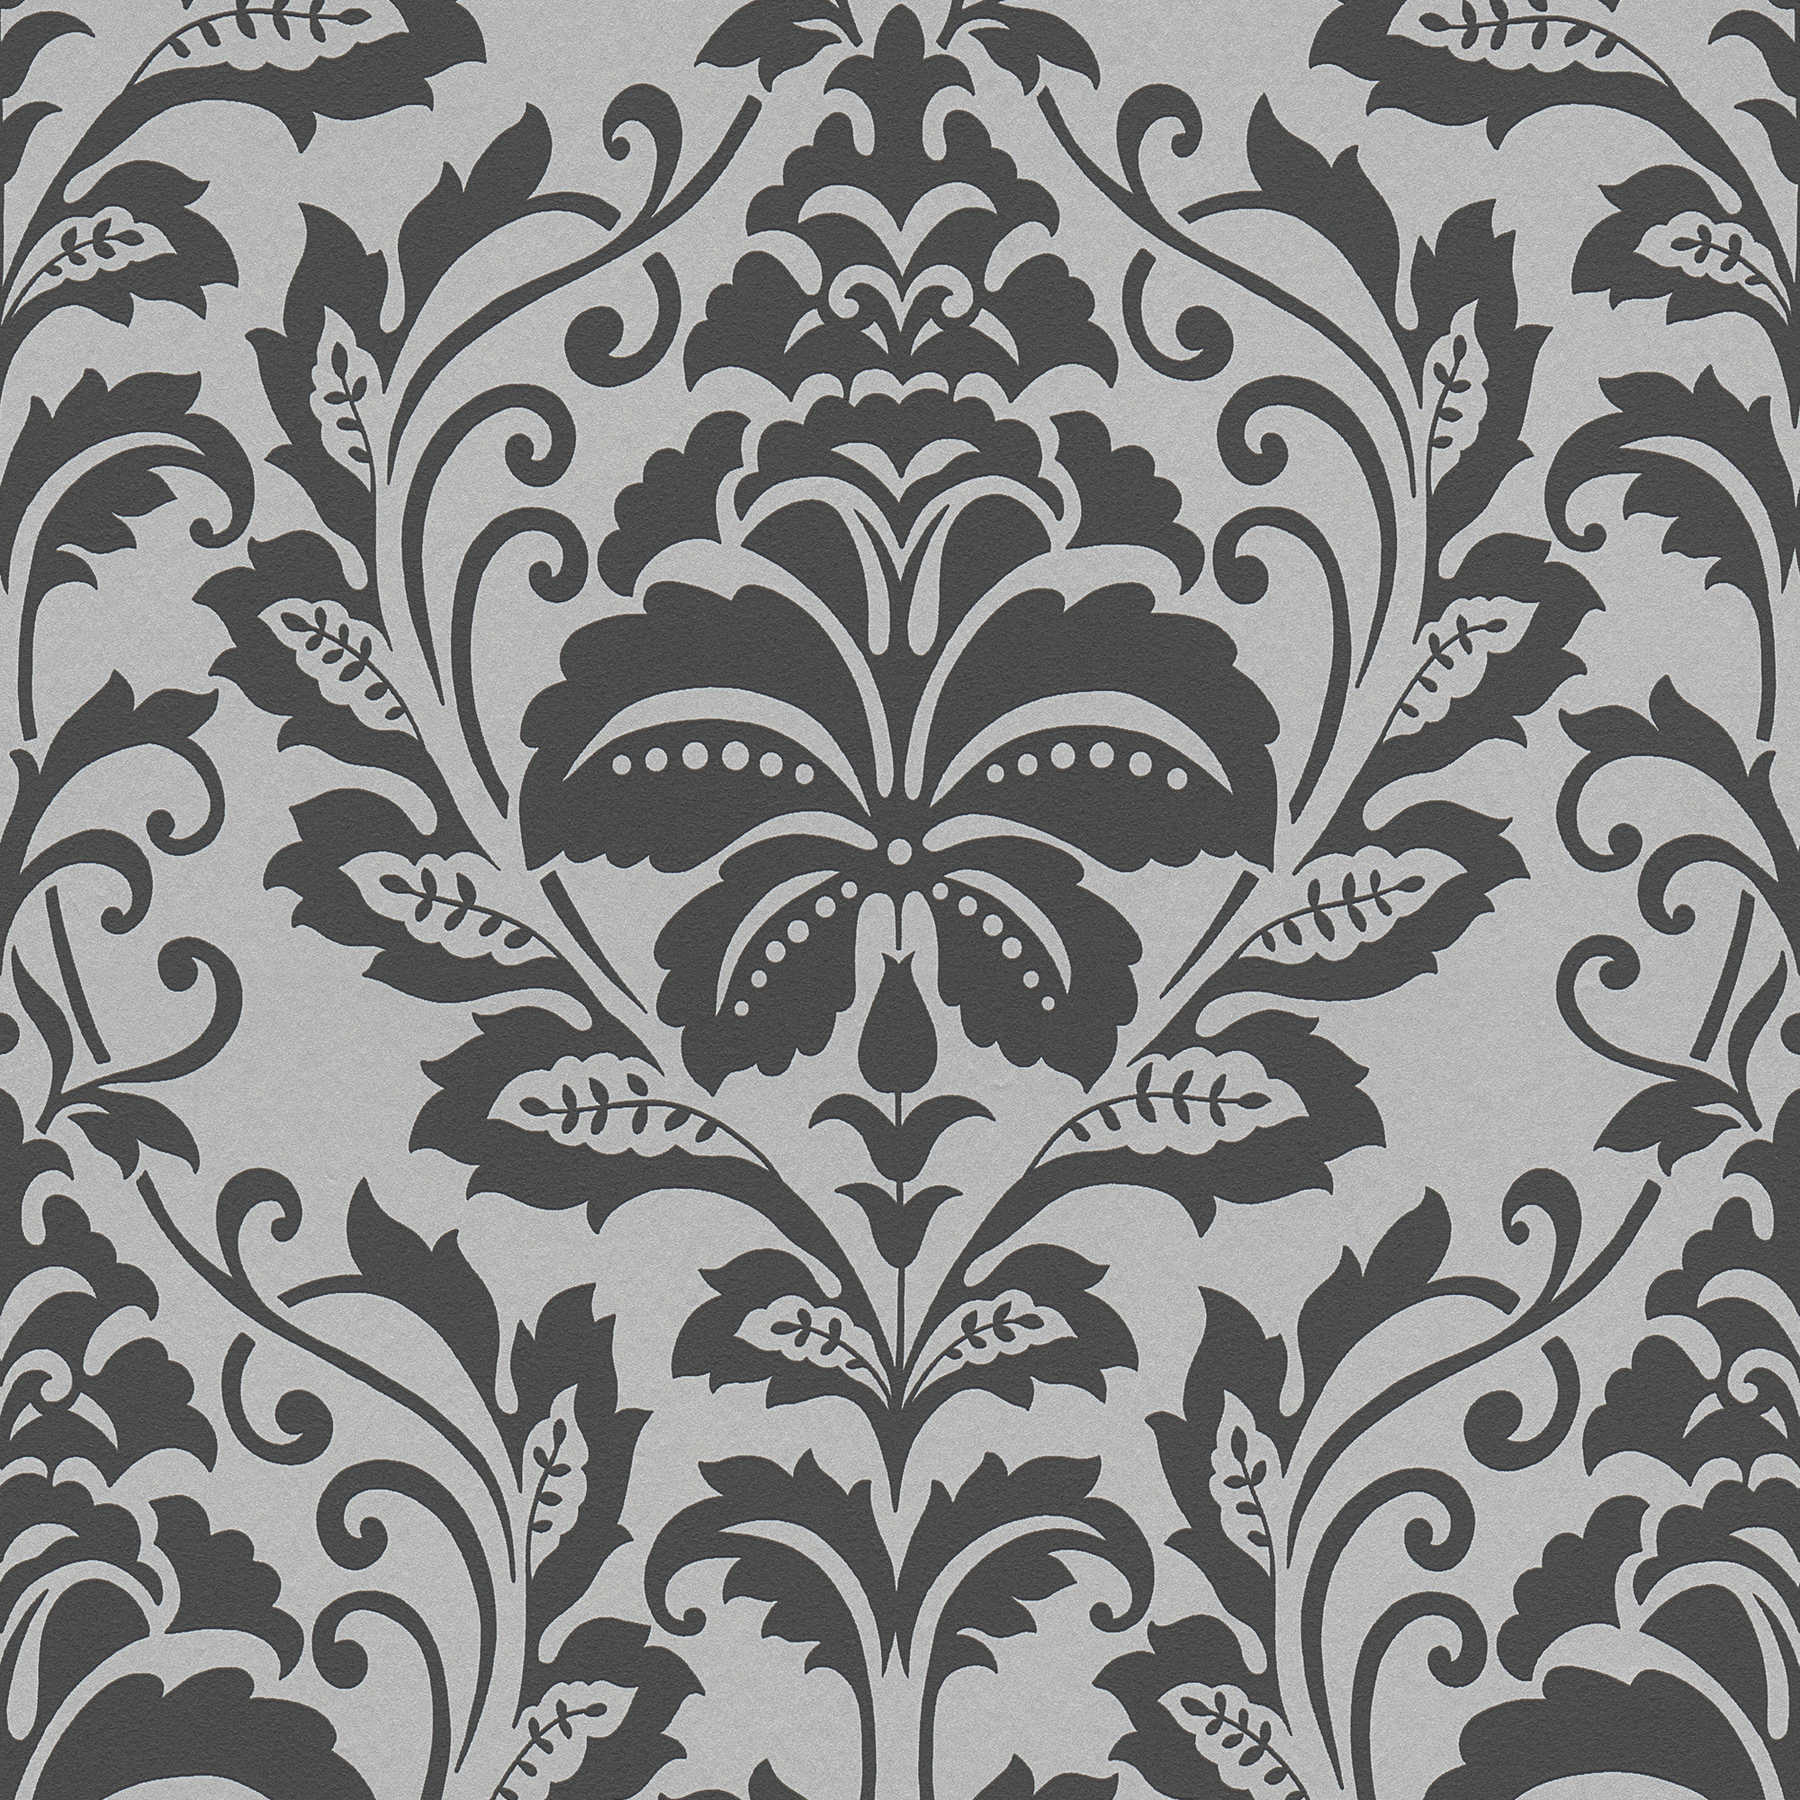 Neo-Klassiek Ornament behang, bloemen - grijs, zwart
